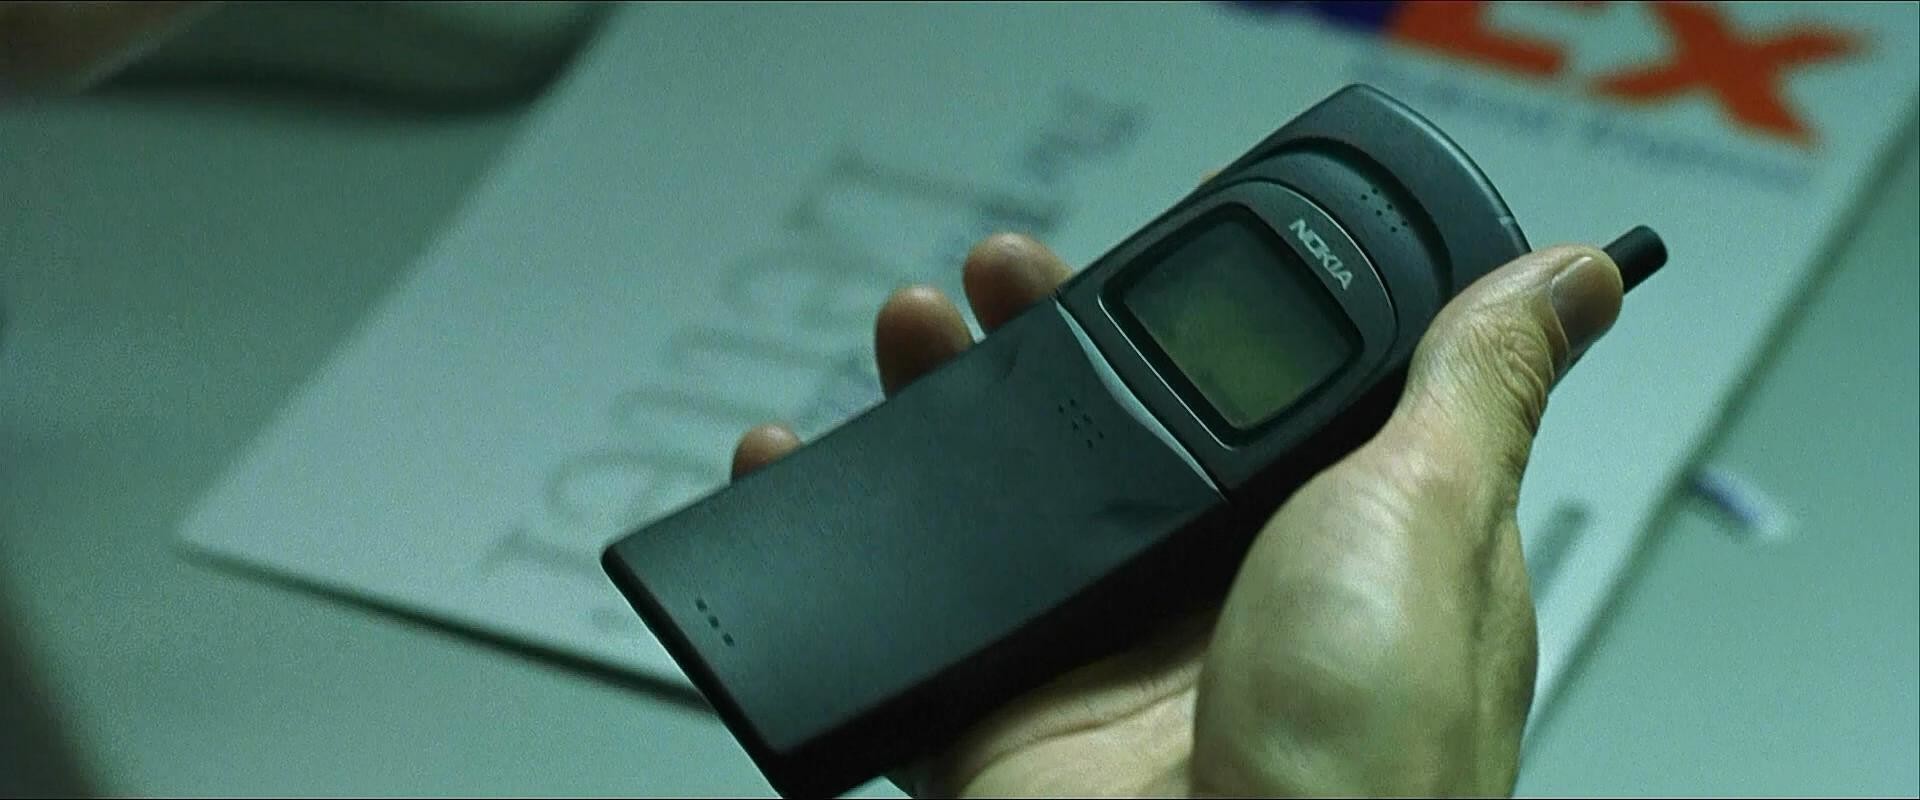 Матрица телефона samsung. Nokia 8110 Нео. Nokia 8110 Matrix. Матрица нокиа 8110. Телефон из матрицы Nokia 8110.